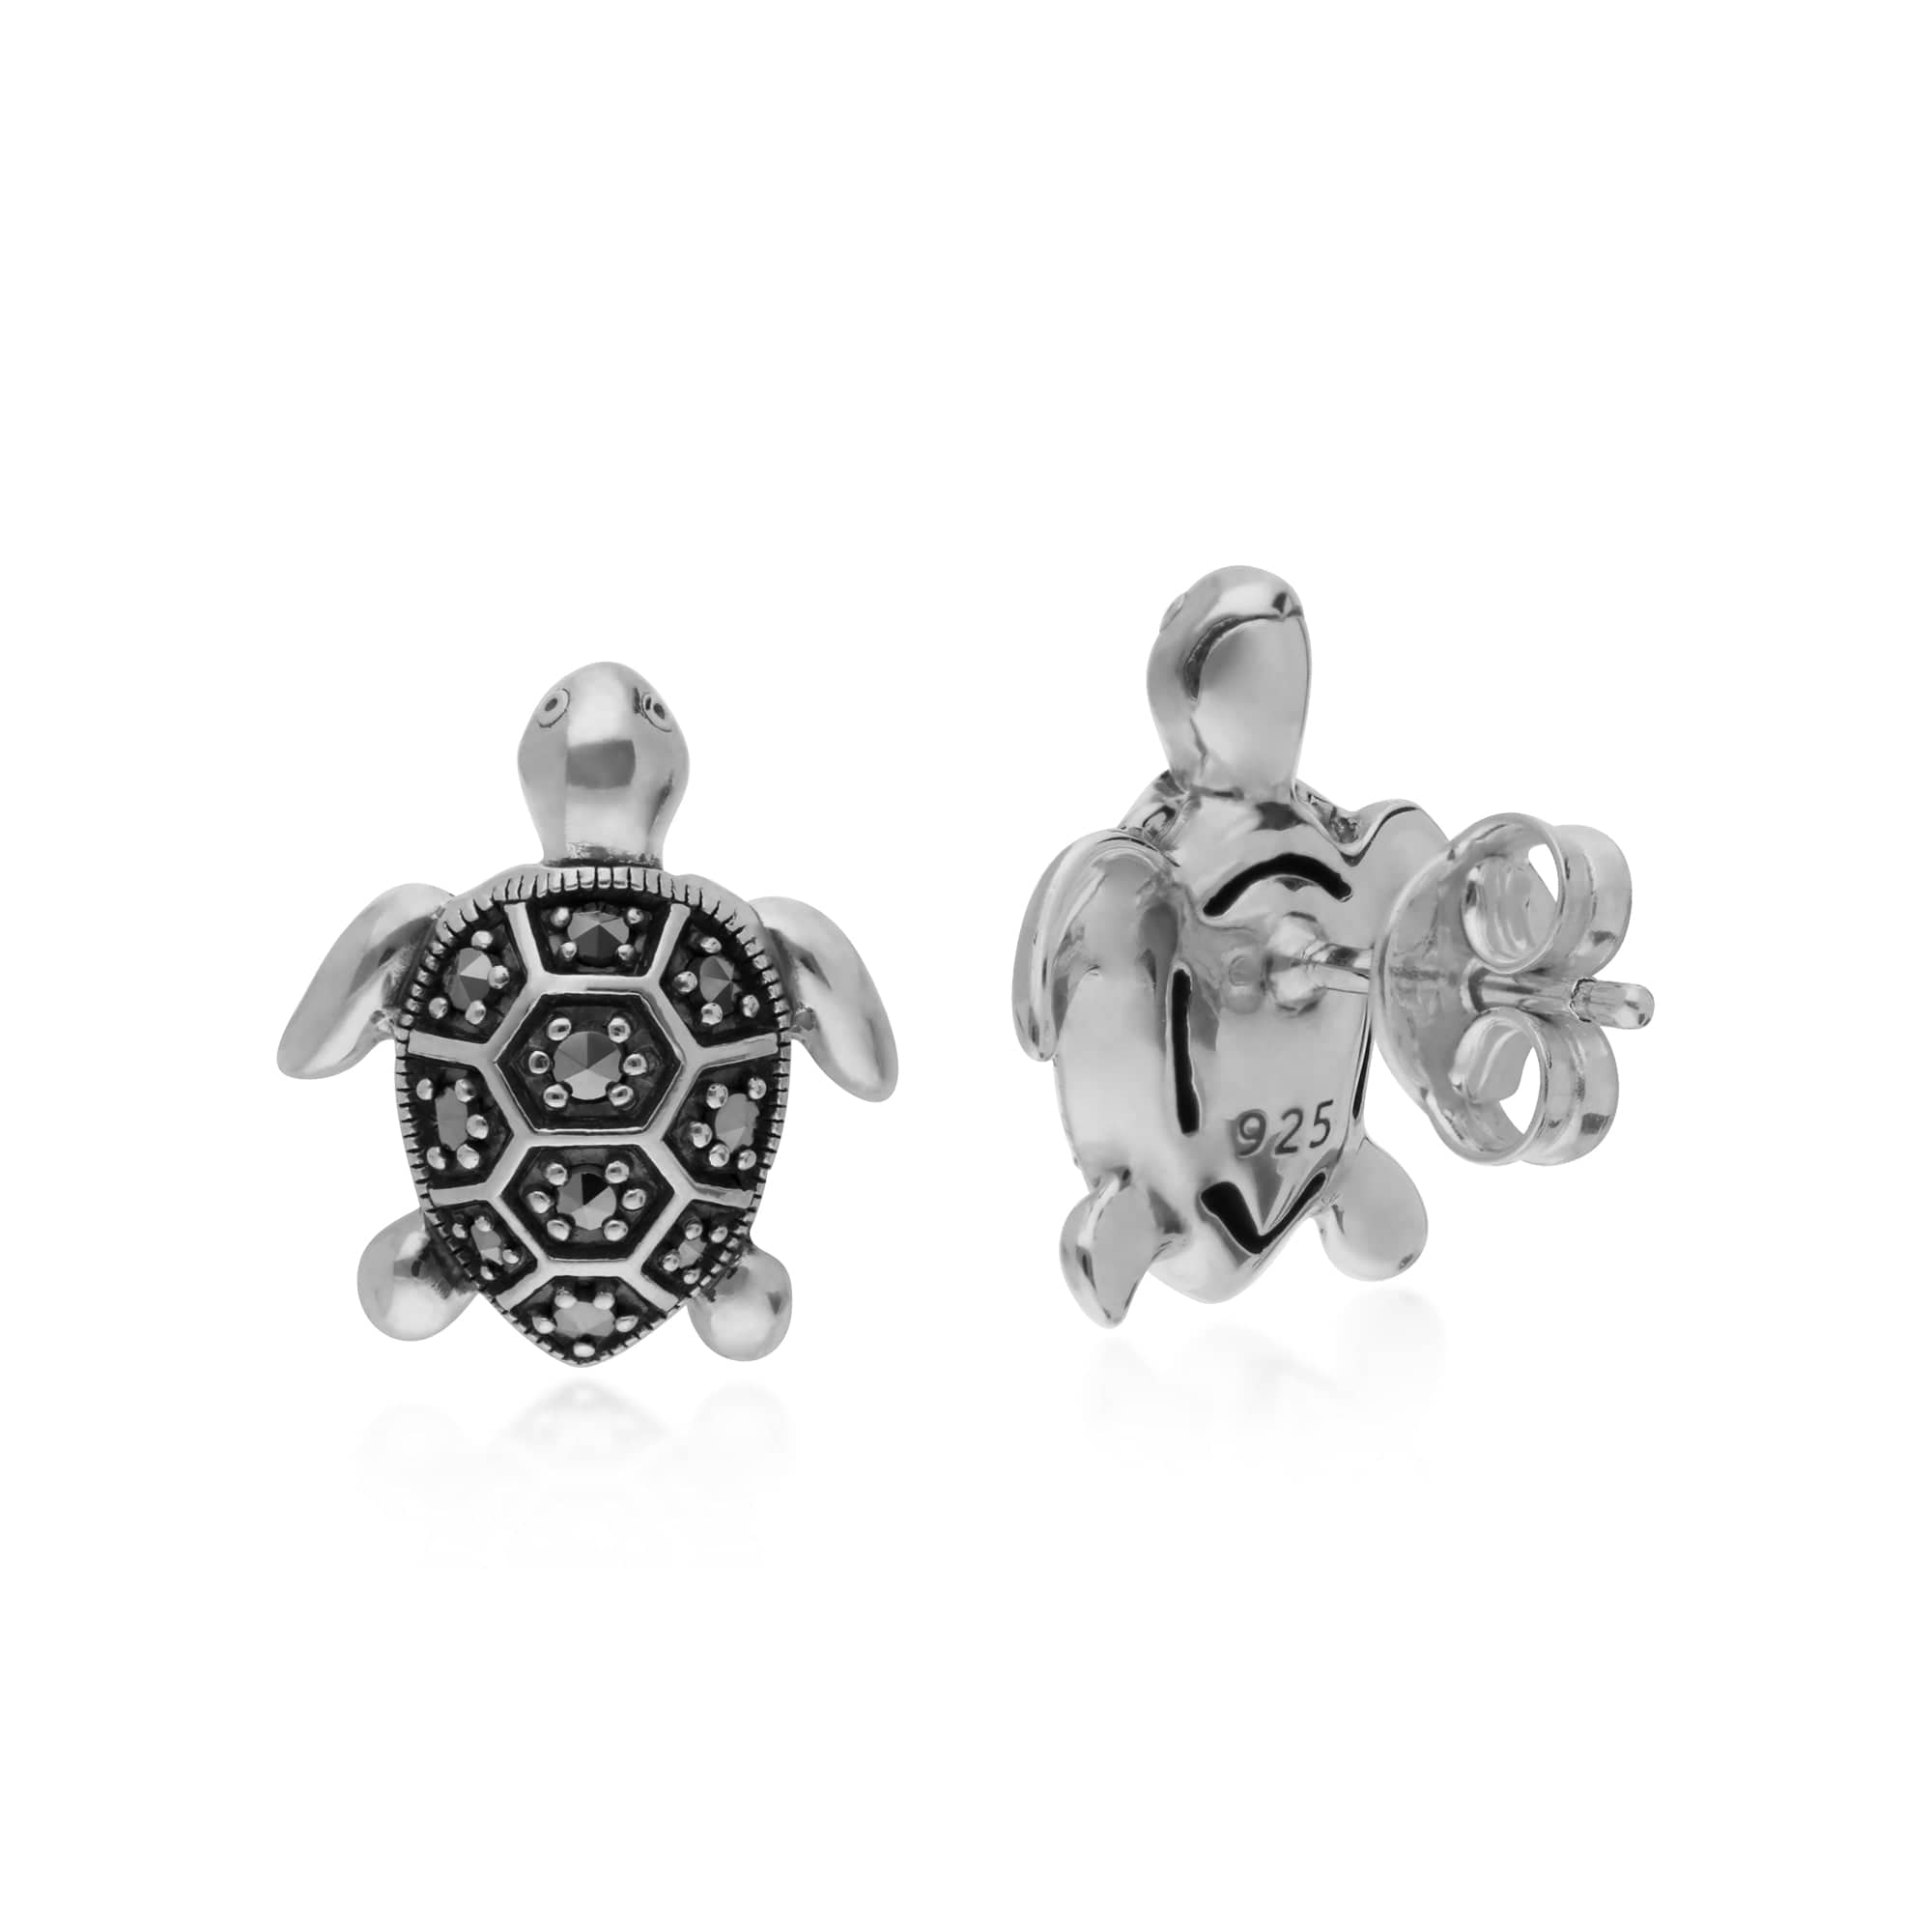 214E869401925 Marcasite Turtle Stud Earrings in 925 Sterling Silver 2